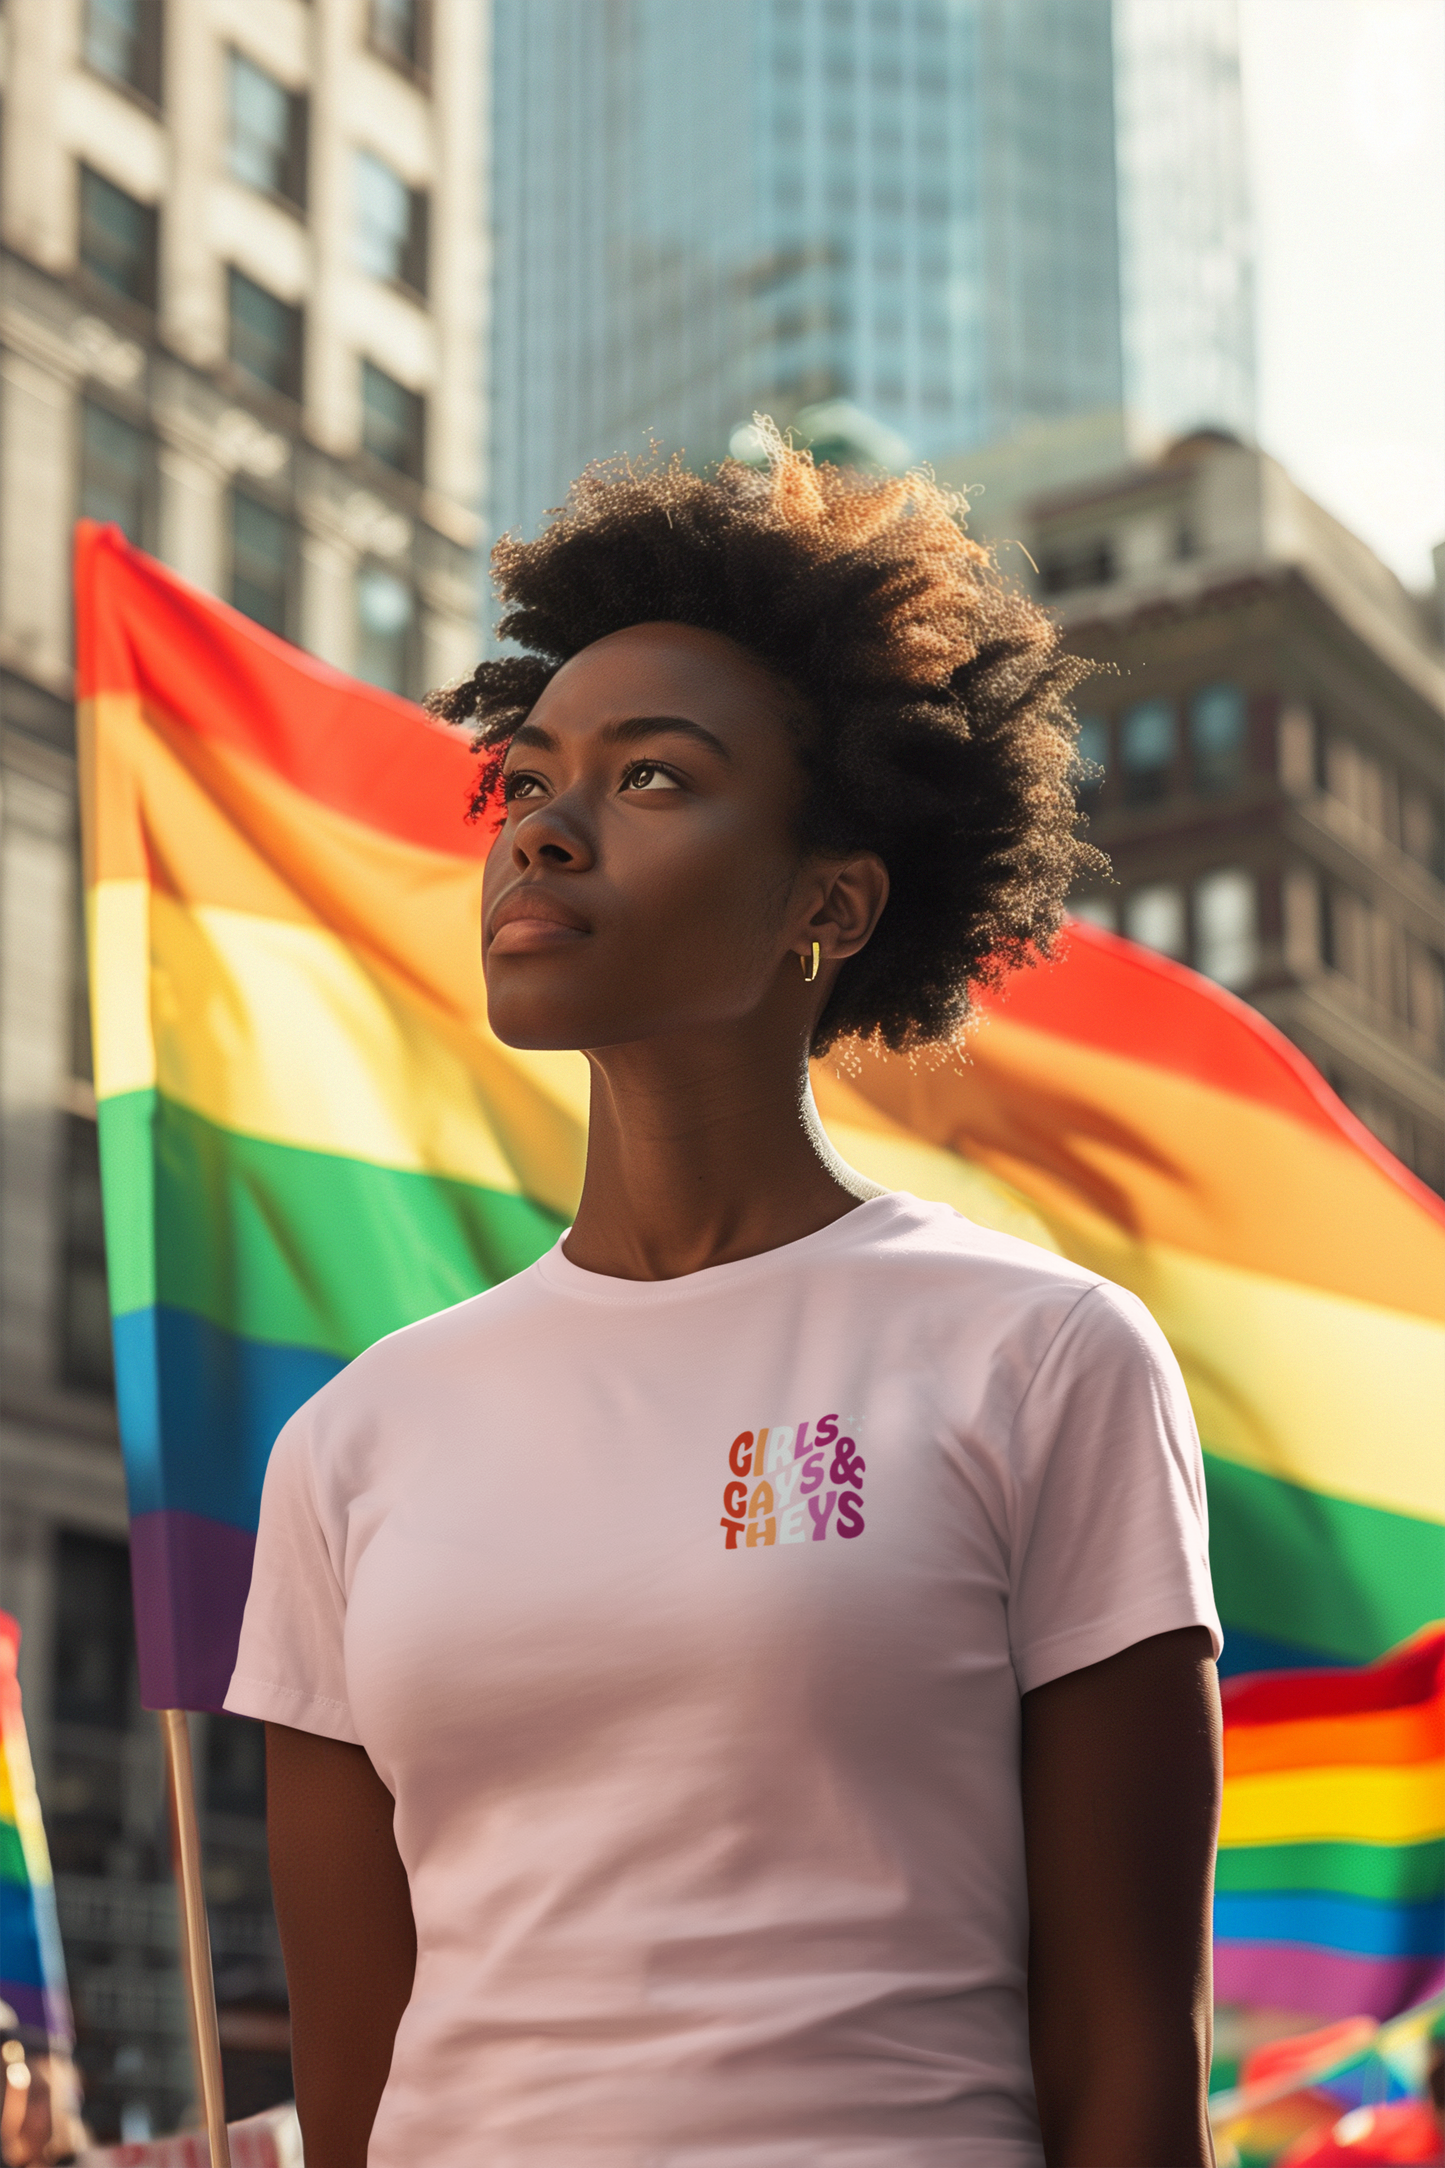 Organic Cotton T-shirt: Girls Gays & Theys (Lesbian Colors)